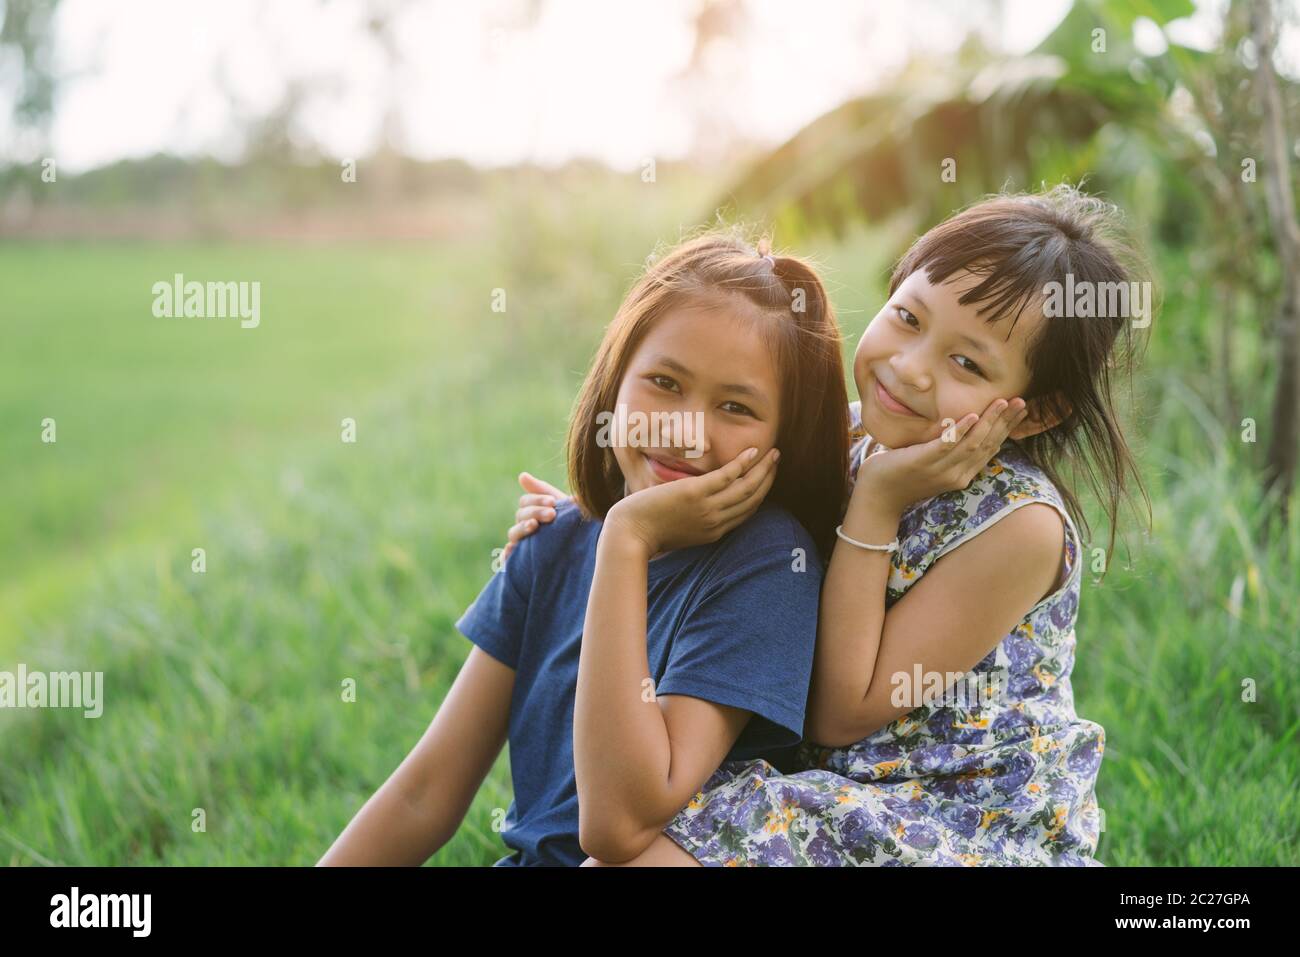 Happy little child girlfriends in green  field Stock Photo